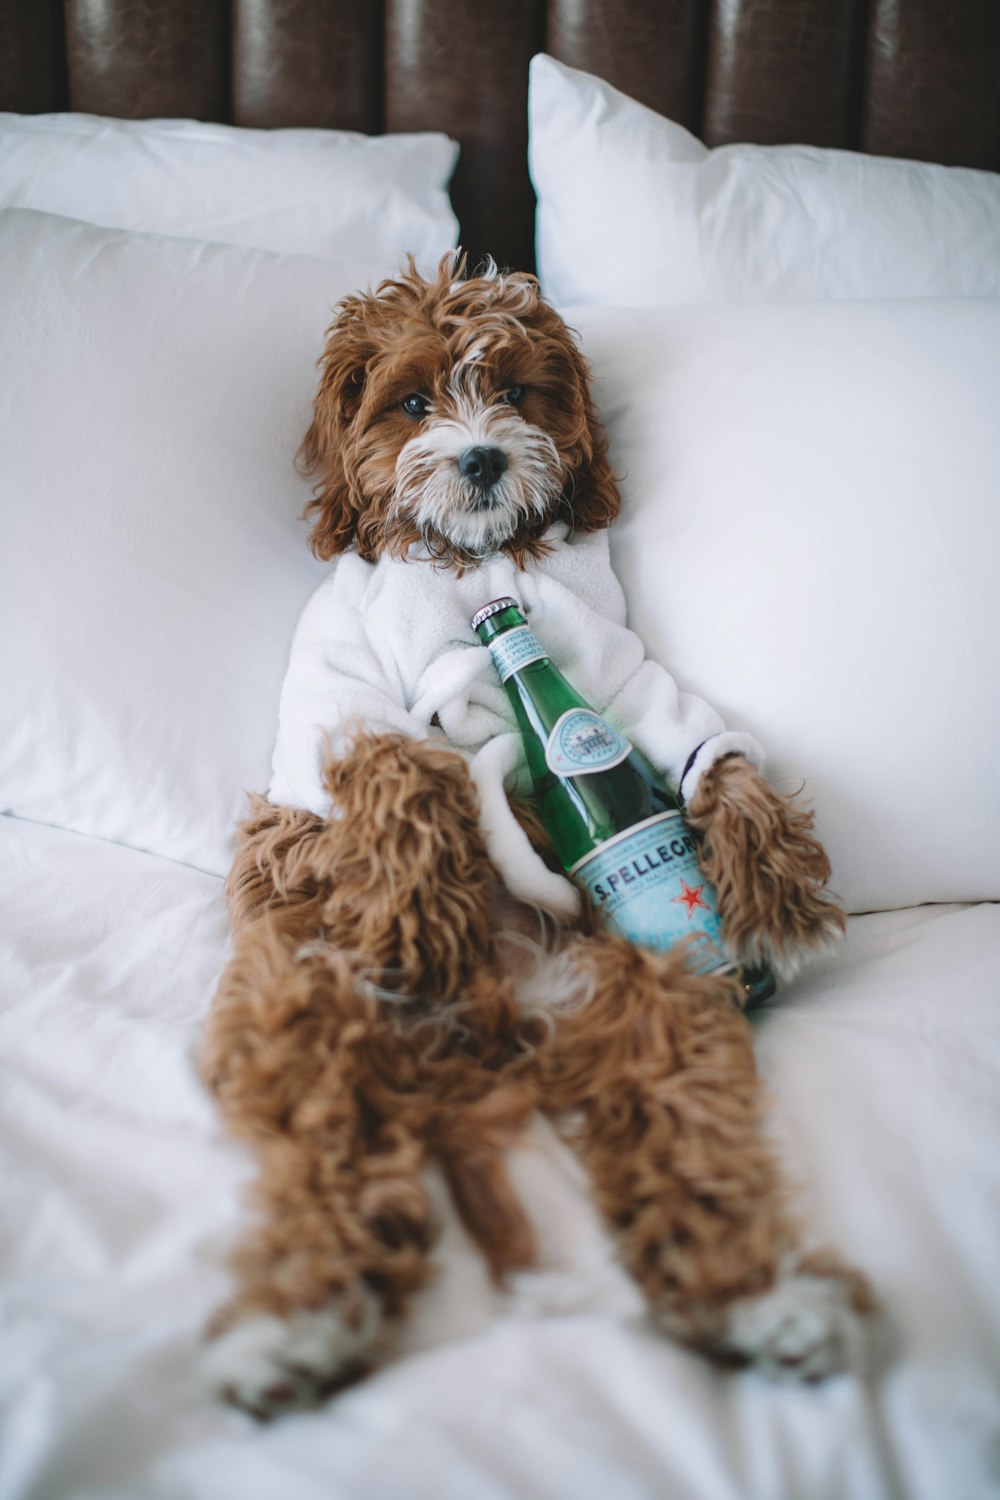 brauner Hund auf dem Bett liegend mit einer Flasche S. Pellegrino Sprudelwasser